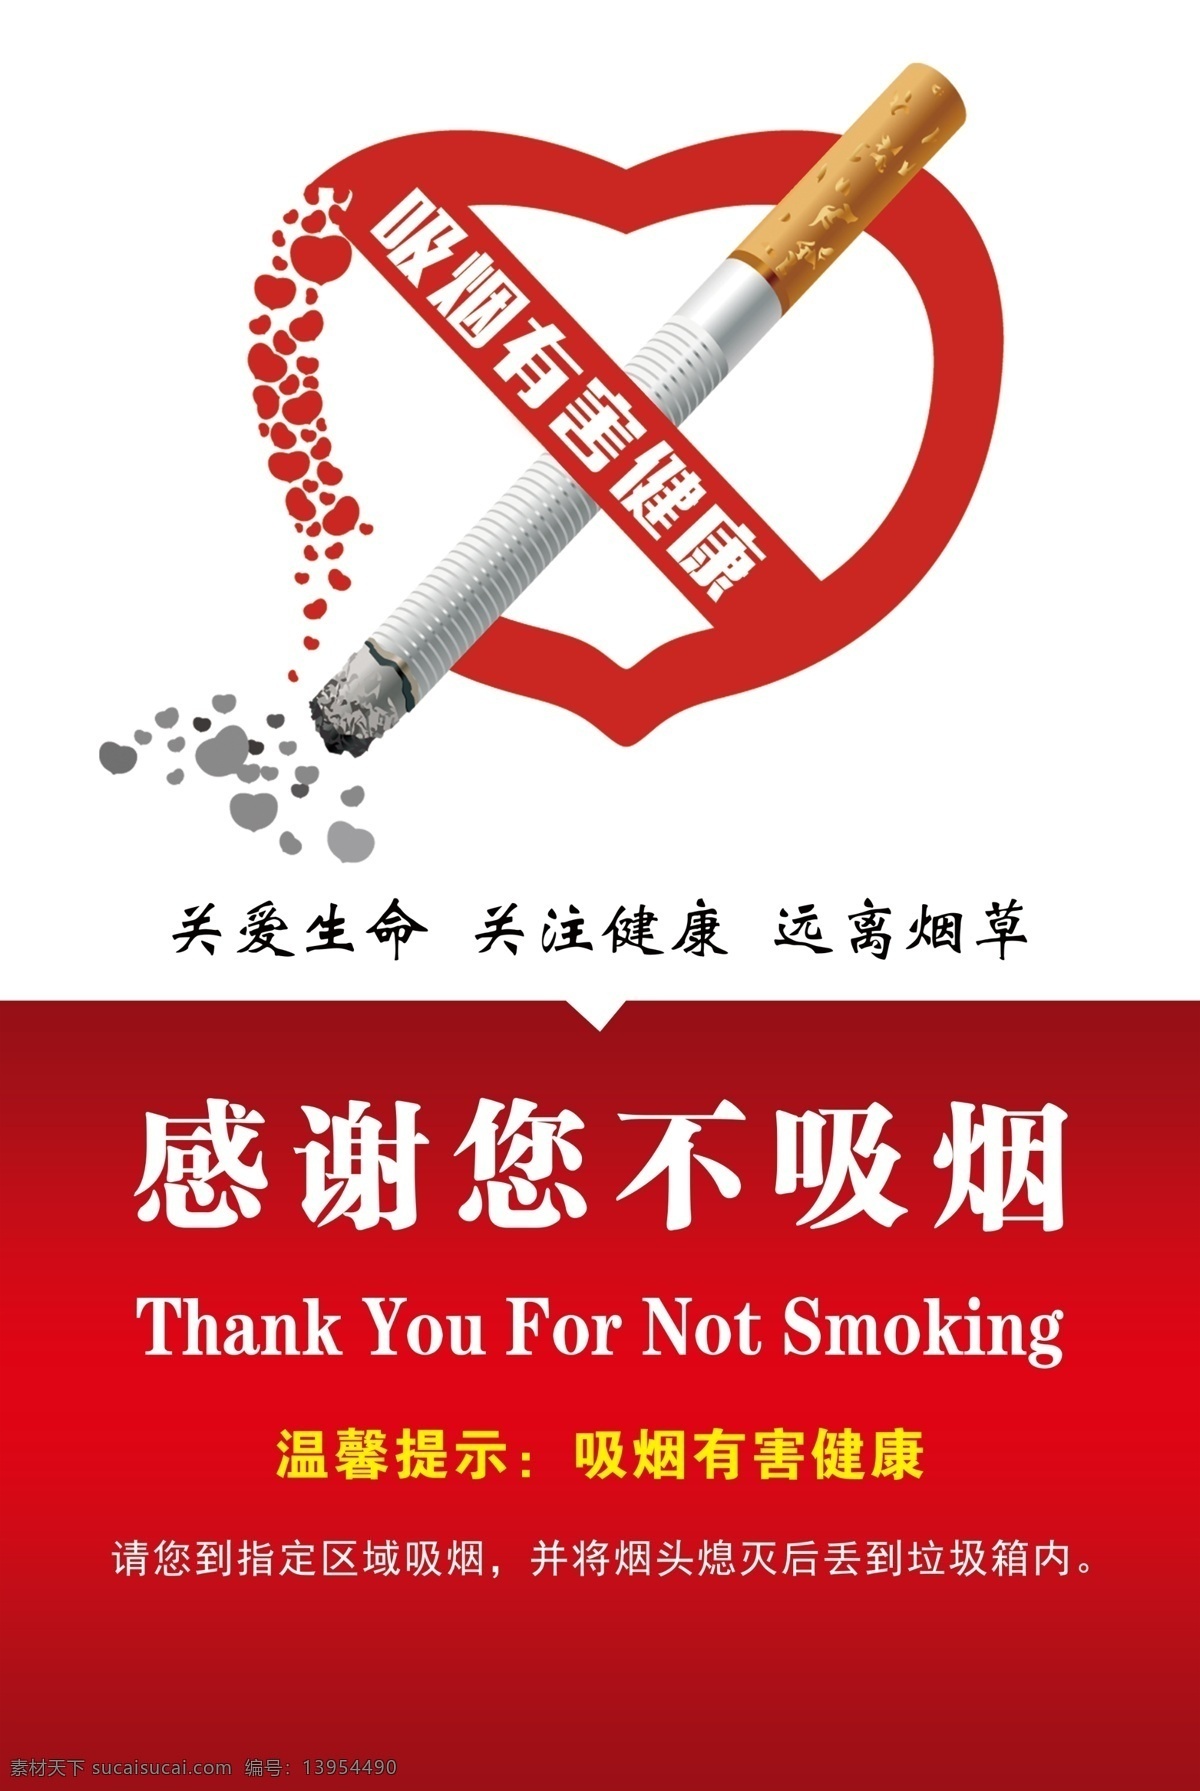 感谢您不吸烟 禁止吸烟 禁止吸烟标志 禁止吸烟标识 禁烟 禁烟标识 禁烟标示 安全标识